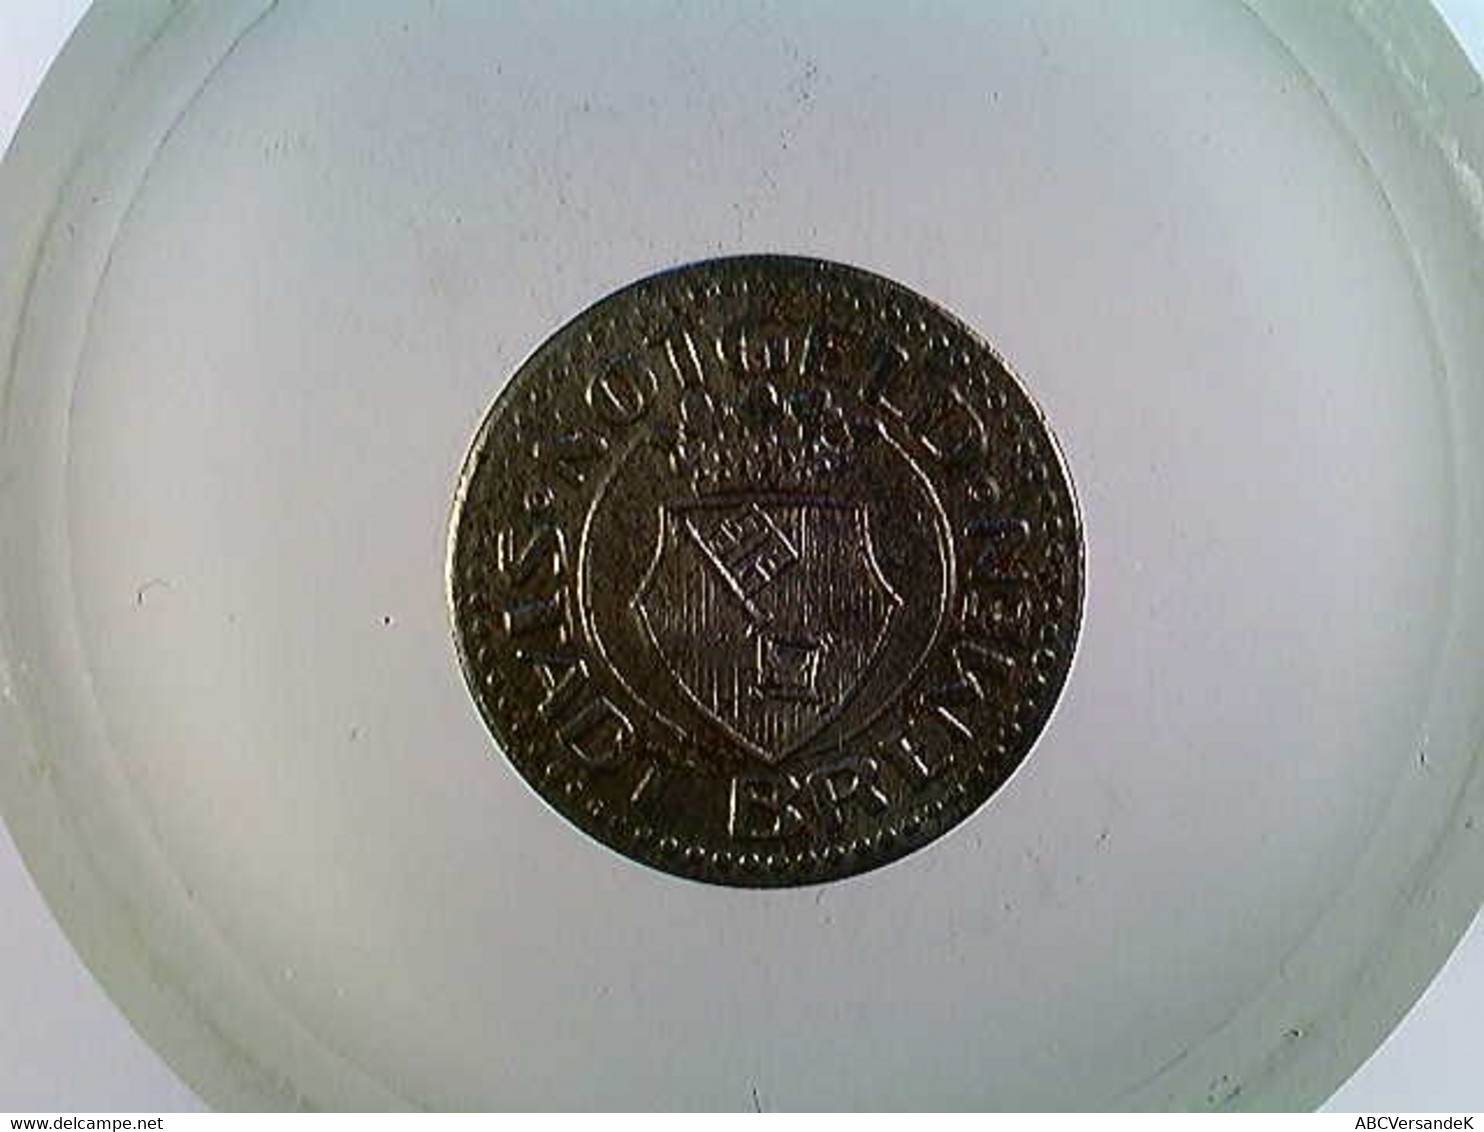 Münze Stadt Bremen, Notgeld 1920, 10 Pfennig - Numismatik